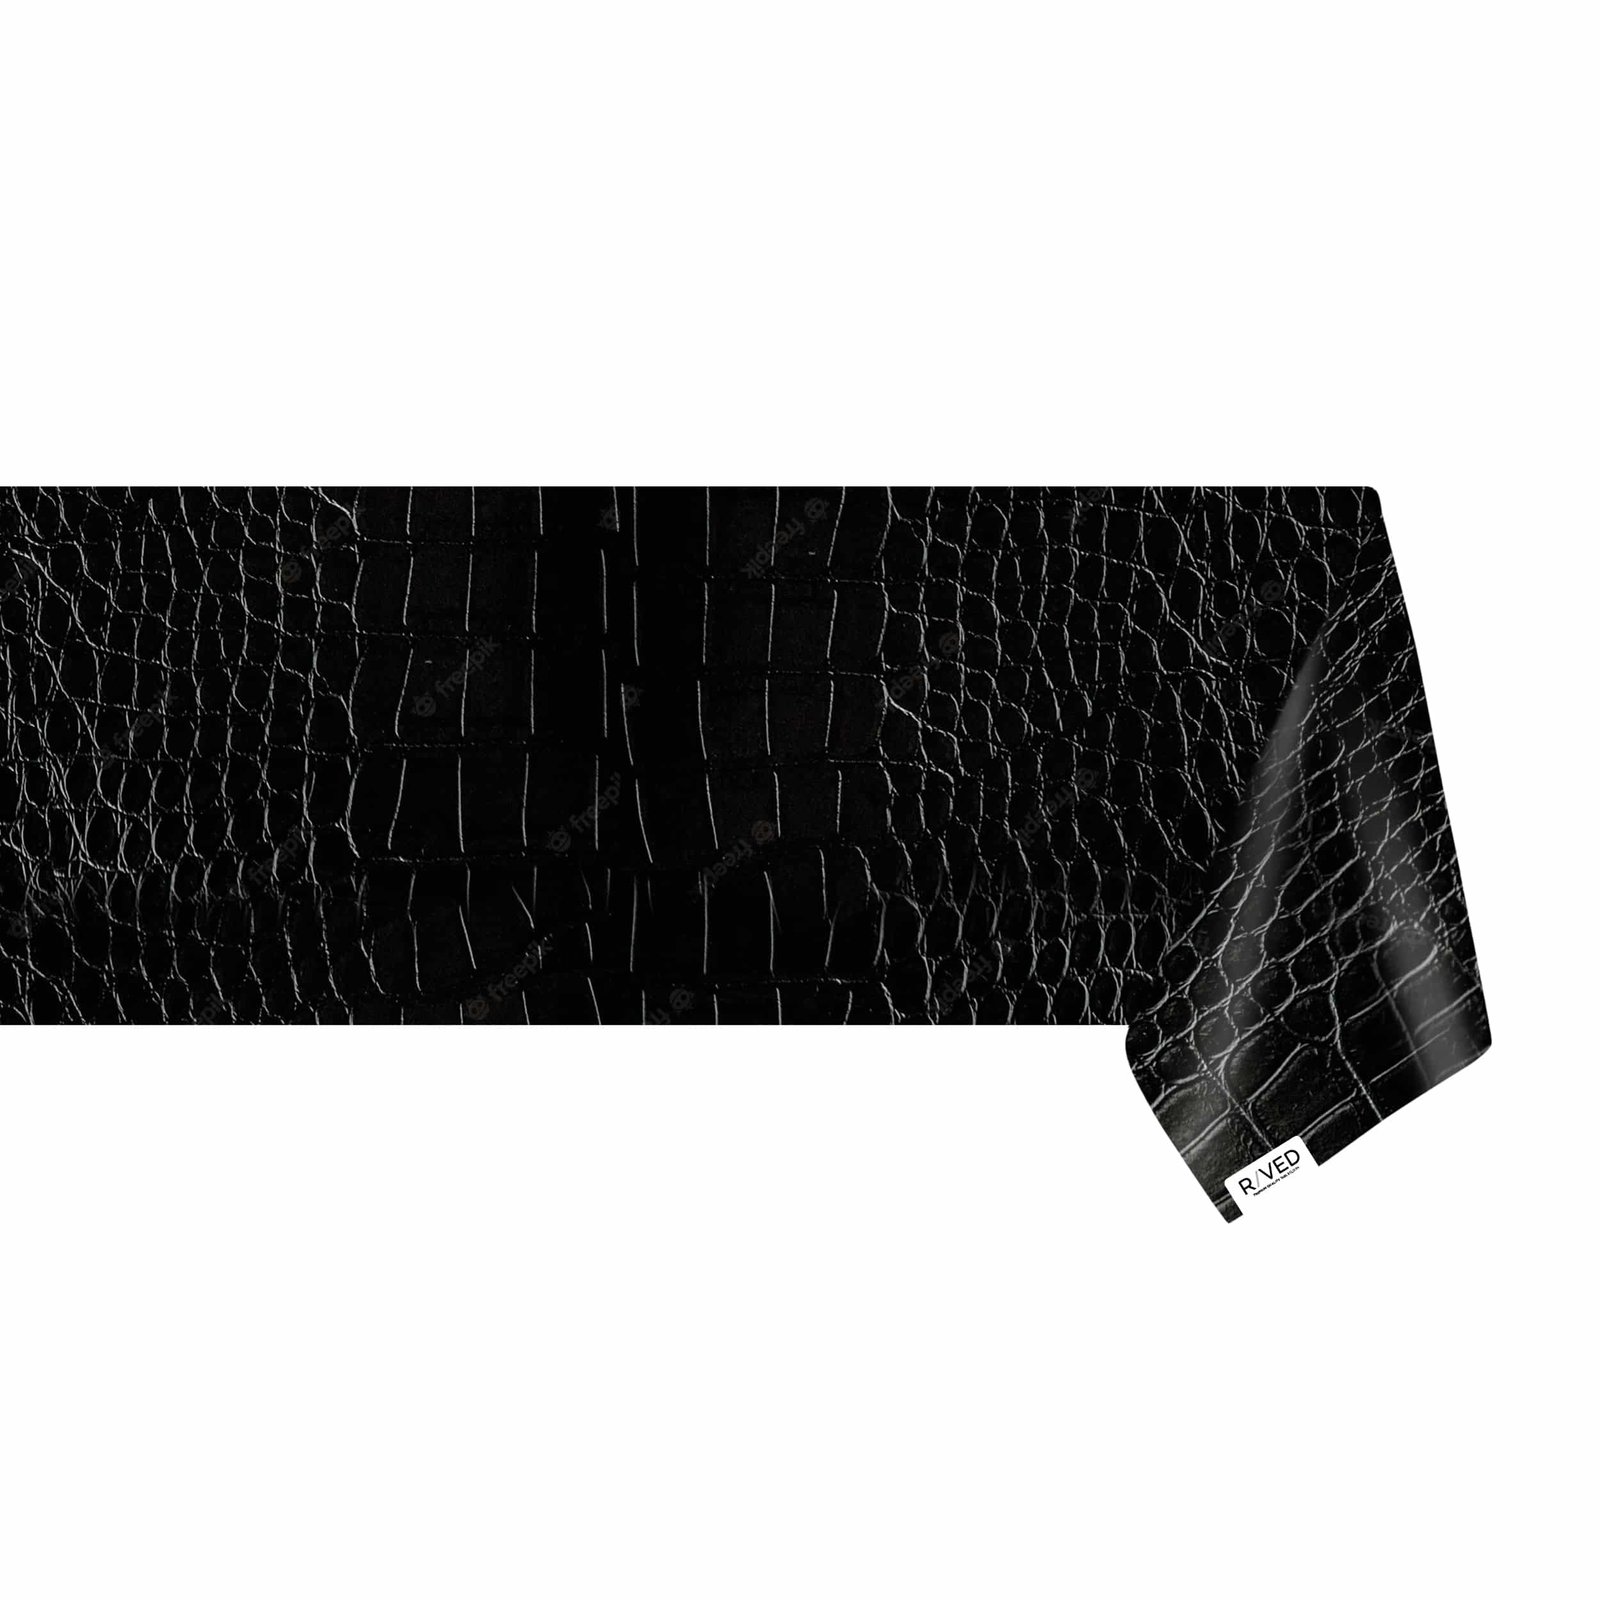 Verlichten Geletterdheid Zonder twijfel Raved Tafelzeil - Leather Look Croco Design Zwart - Raved Fabrics